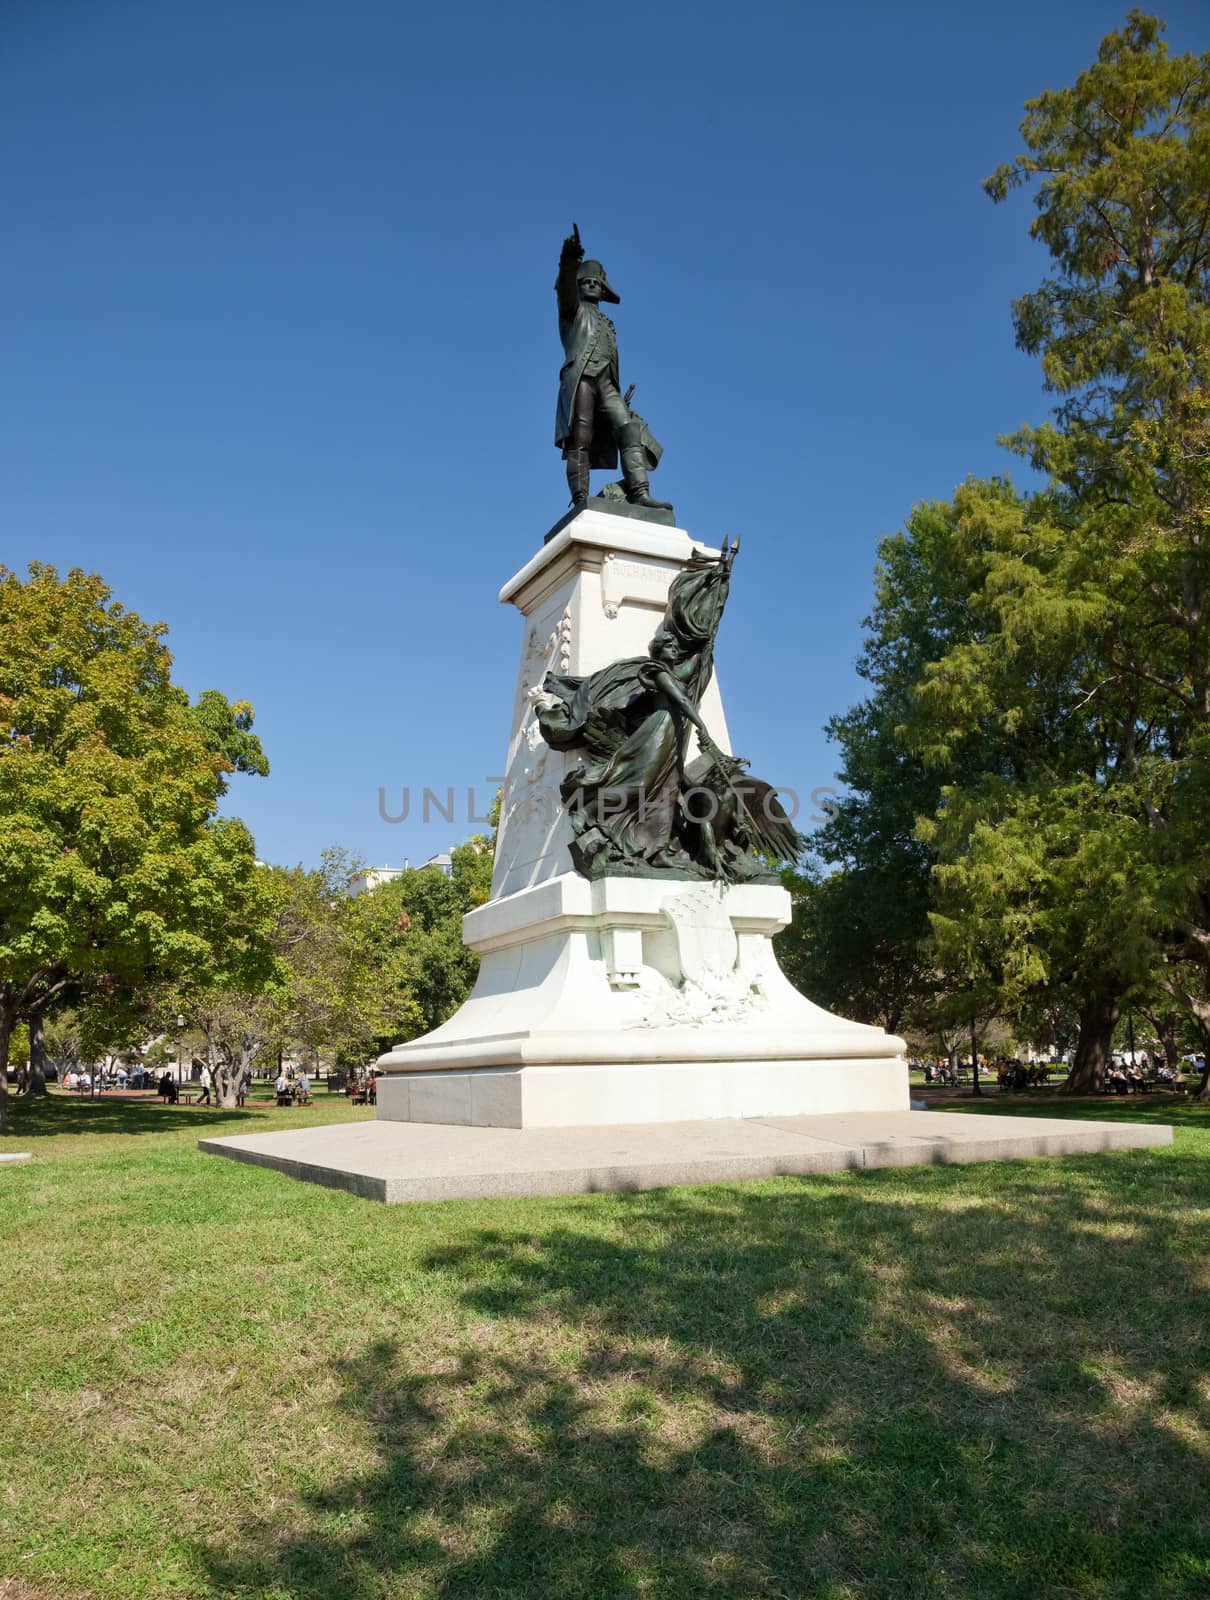 Statue of Rochambeau in Lafayette Park, Washington D.C.